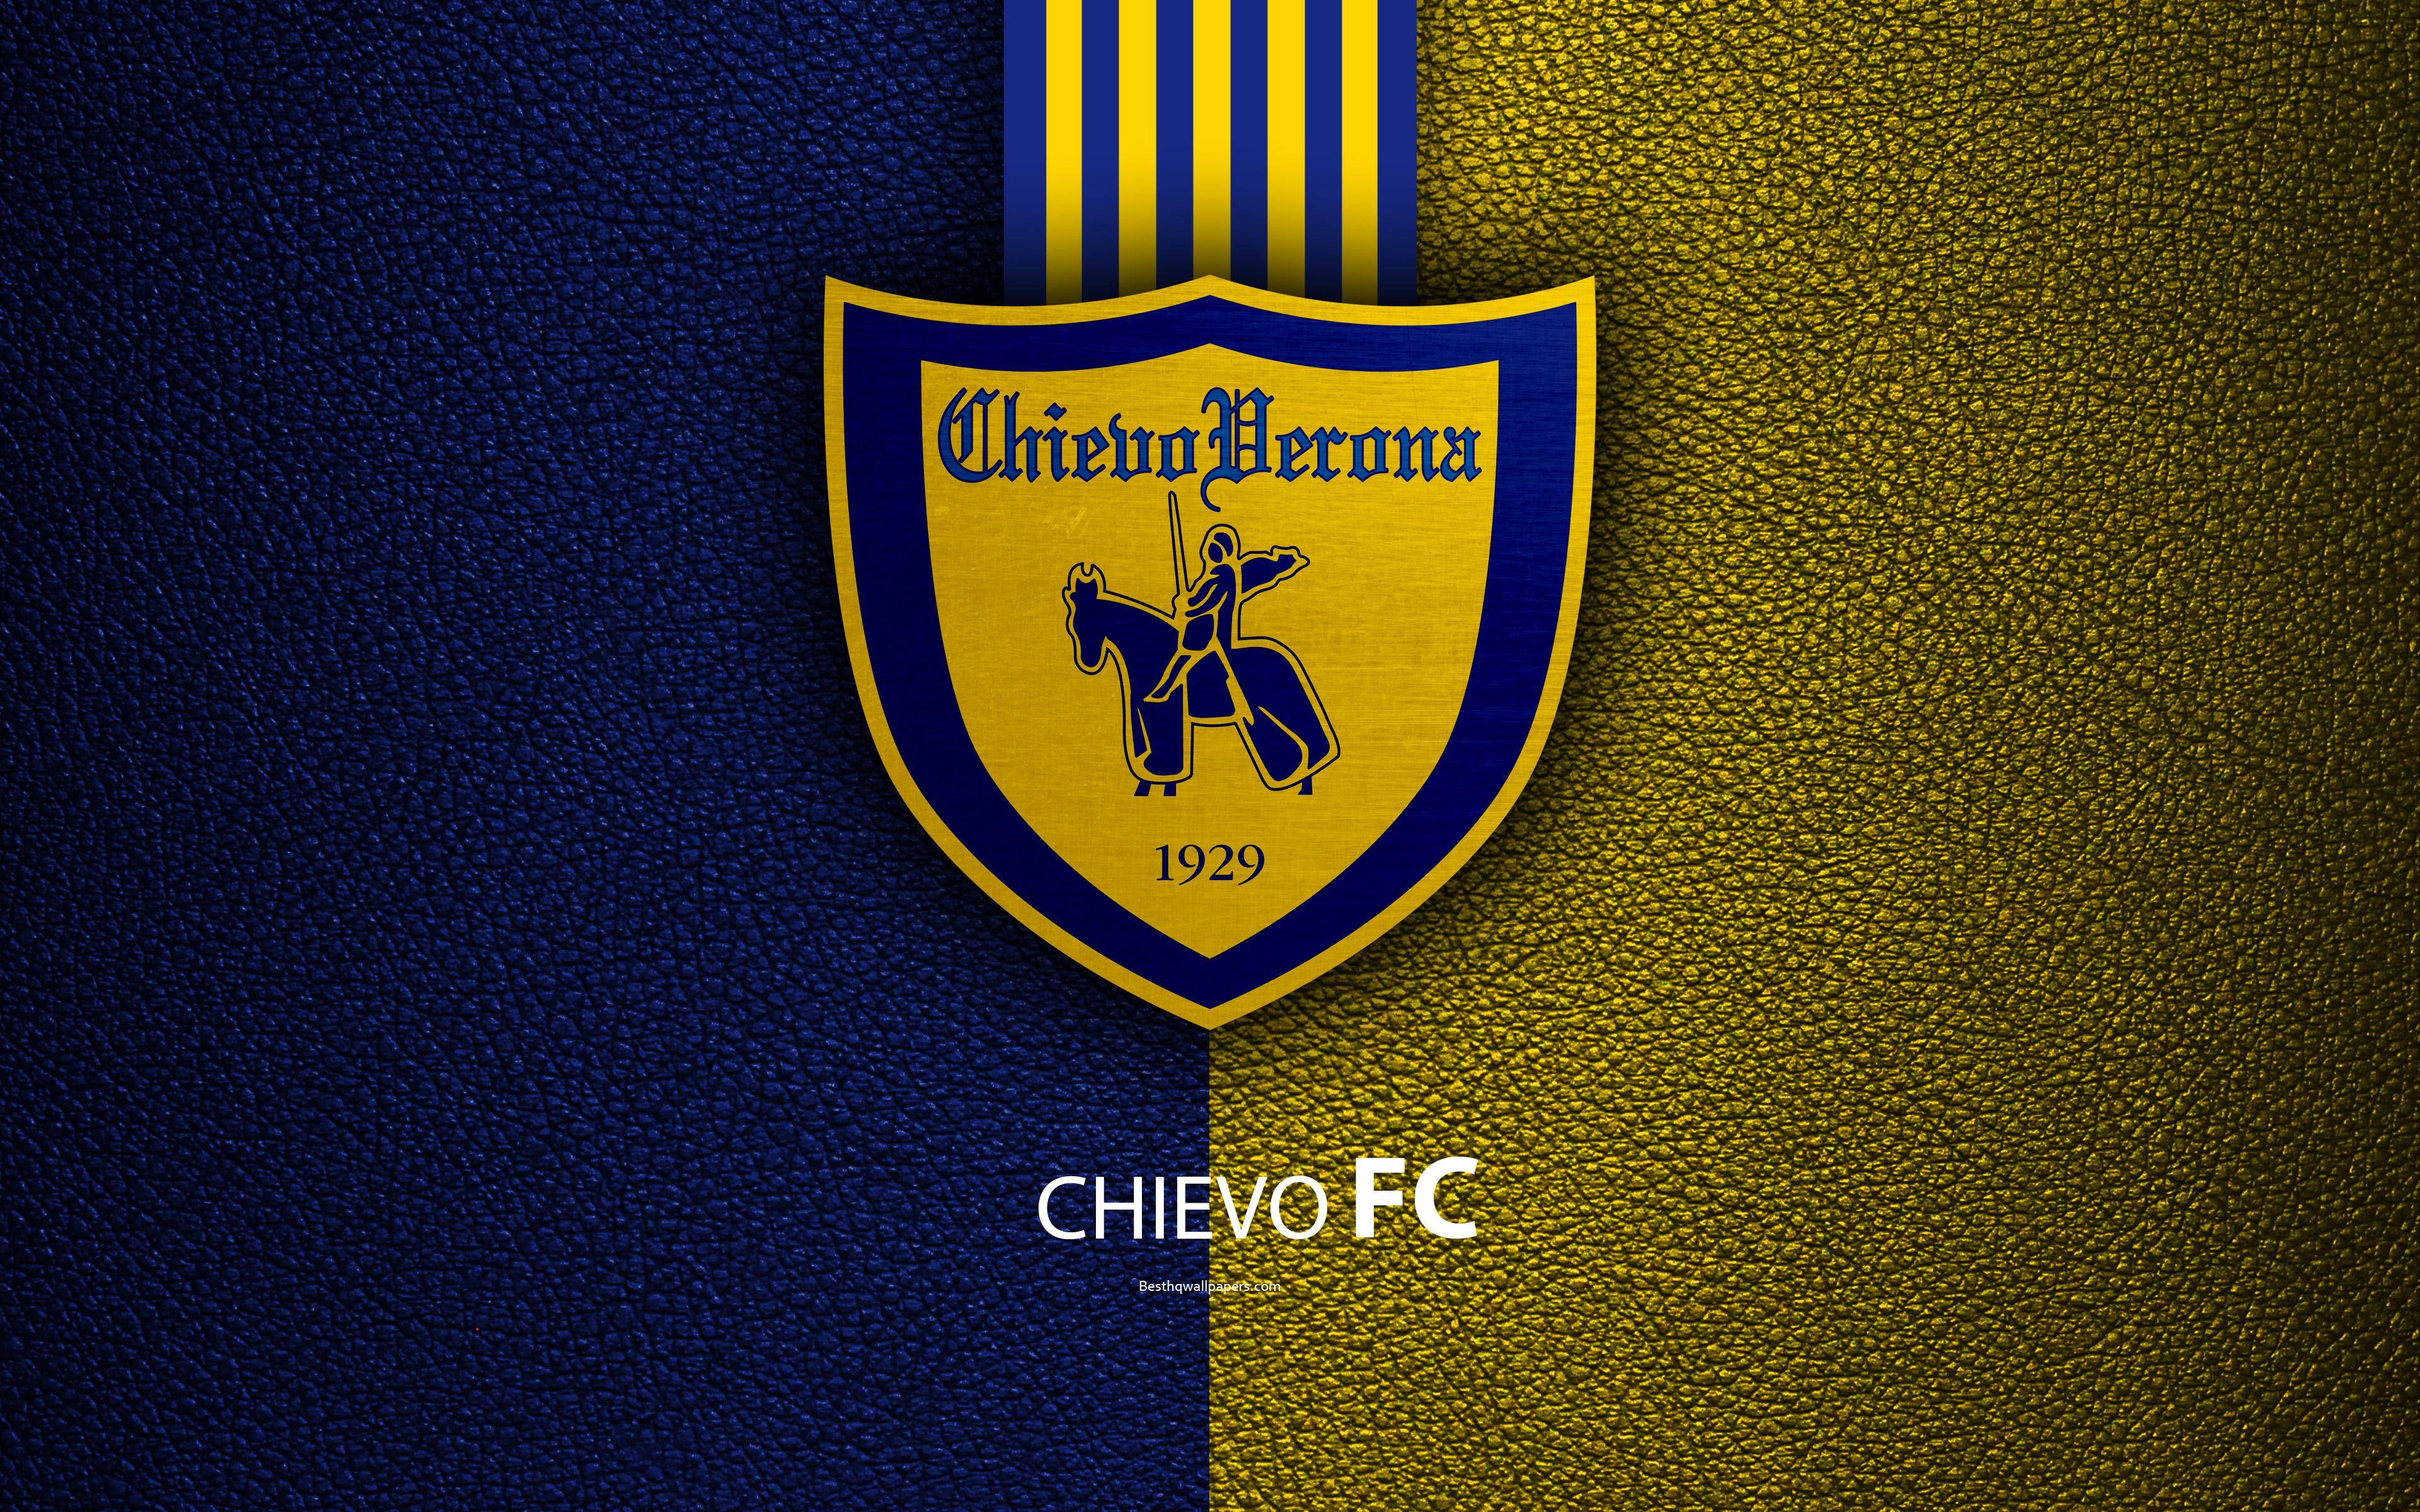 Download wallpaper Chievo Verona FC, 4k, Italian football club